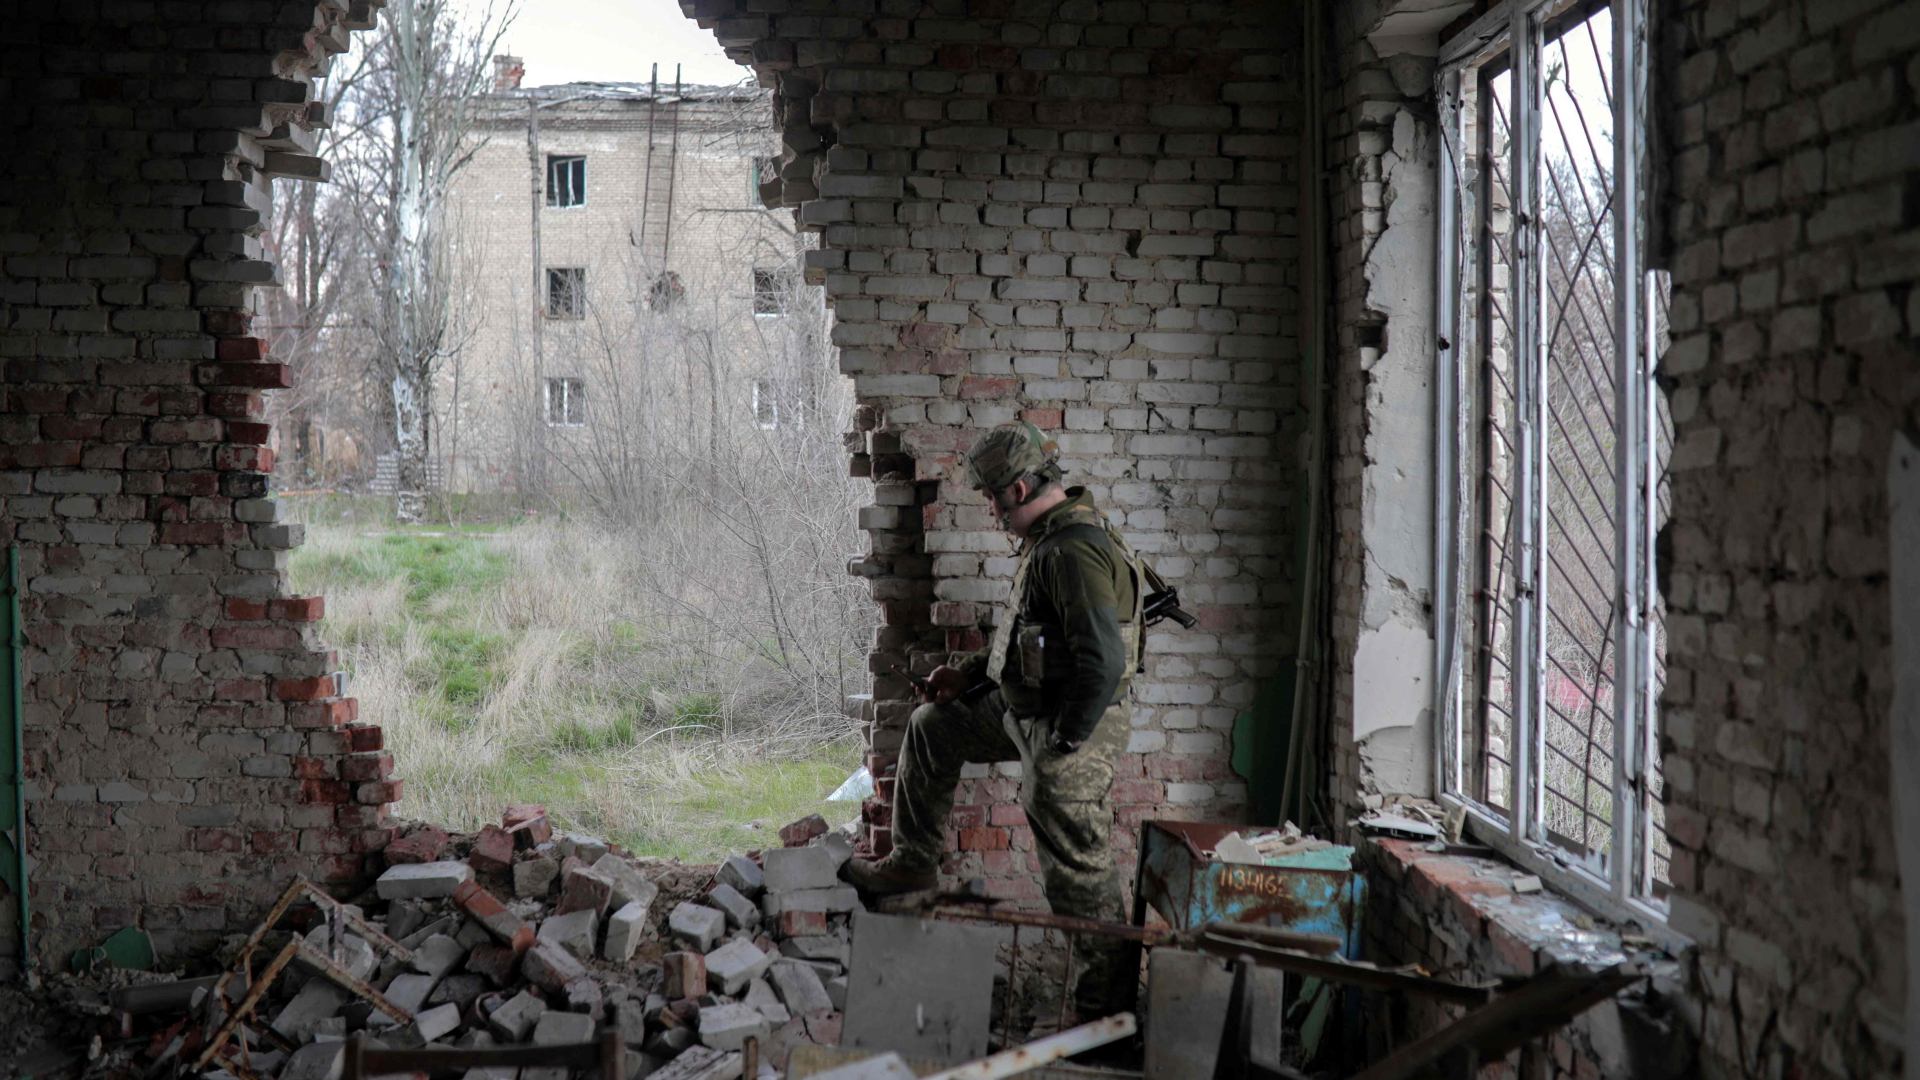 Ein Ukrainer in Kampfmontur steht an der Wand eines zerstörten Hauses in Pisky, nahe Donezk. | AFP